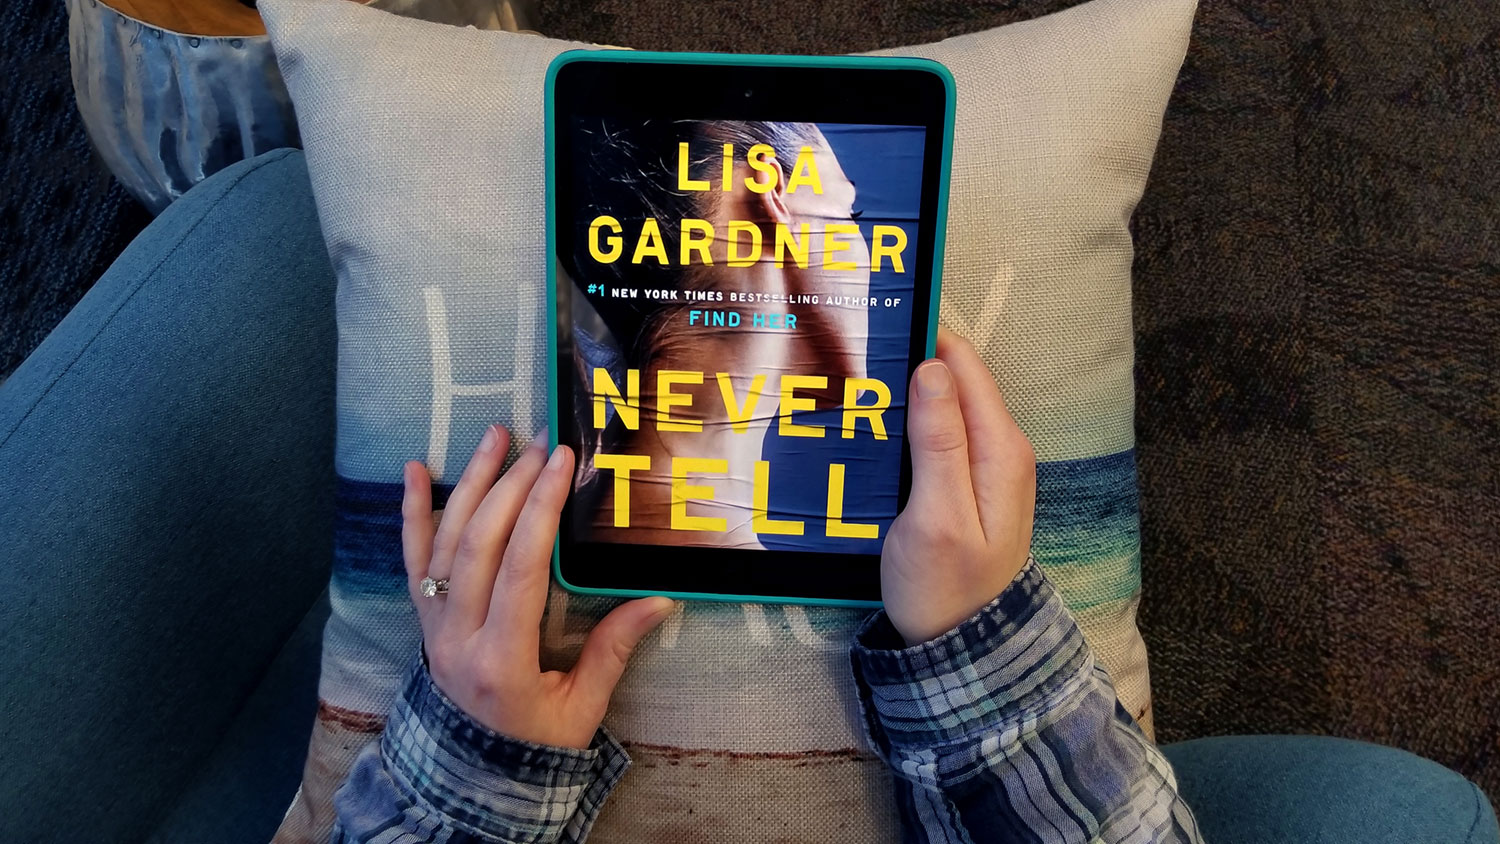 "Never Tell" by Lisa Gardner